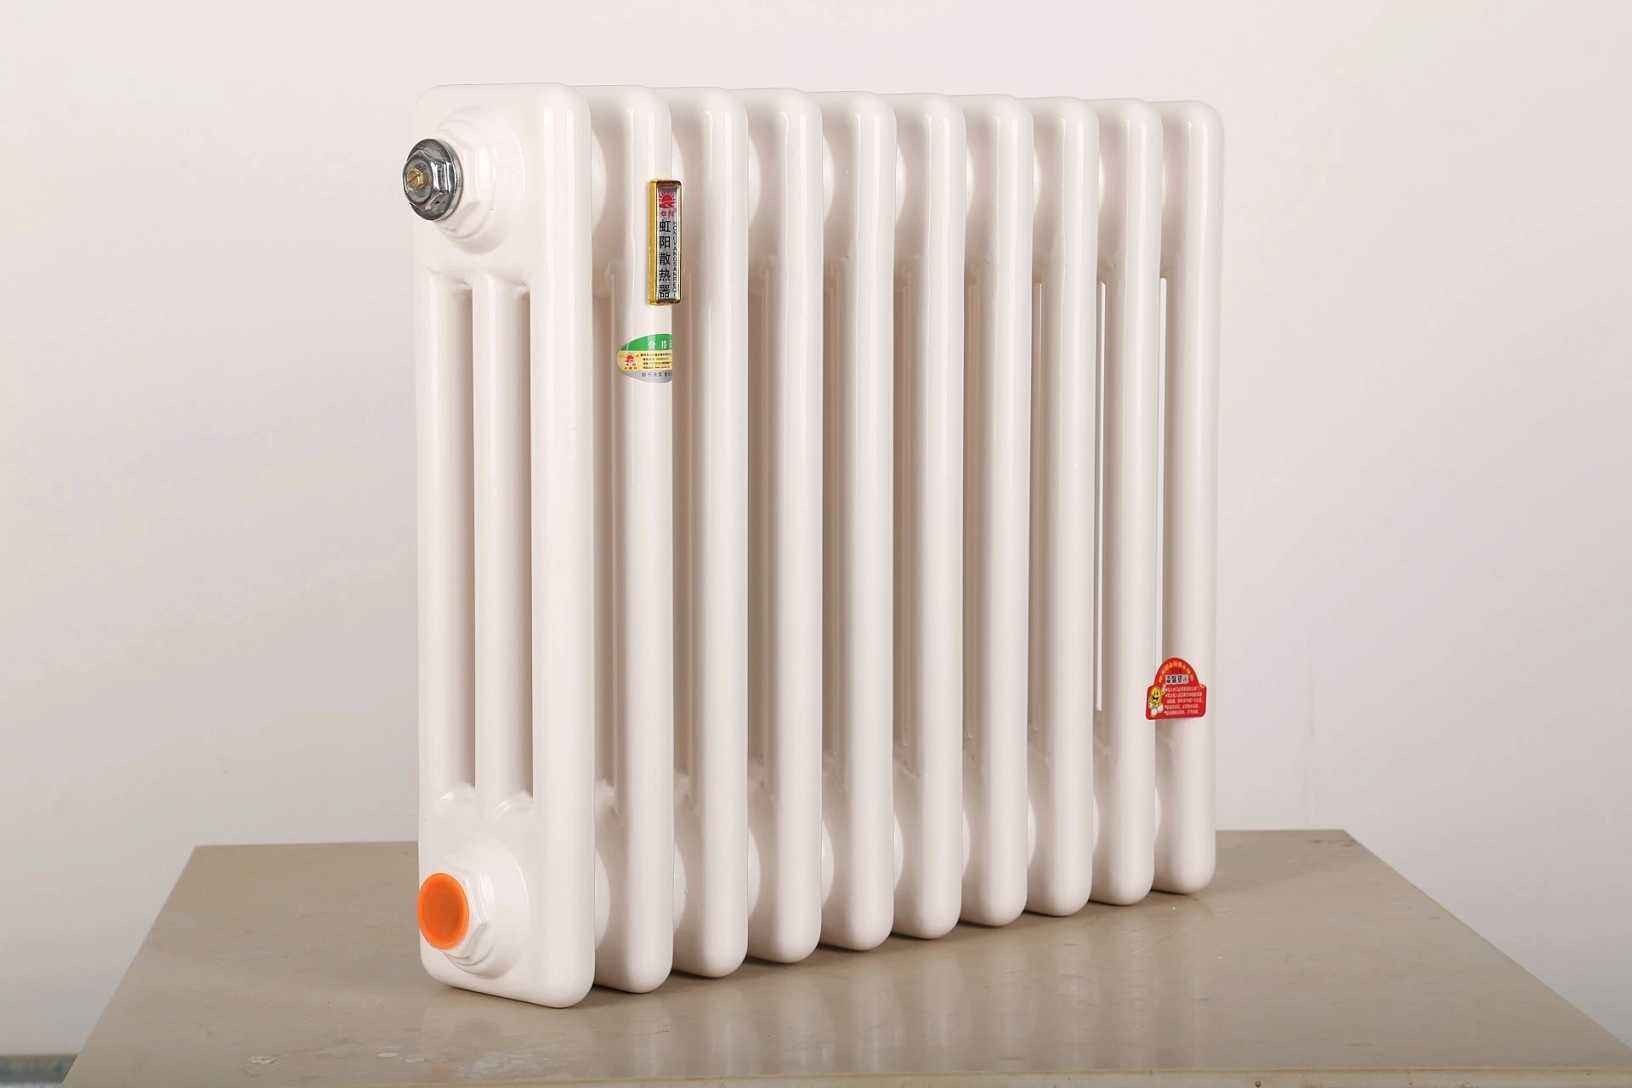 钢三柱散热器—钢三柱散热器的优缺点介绍